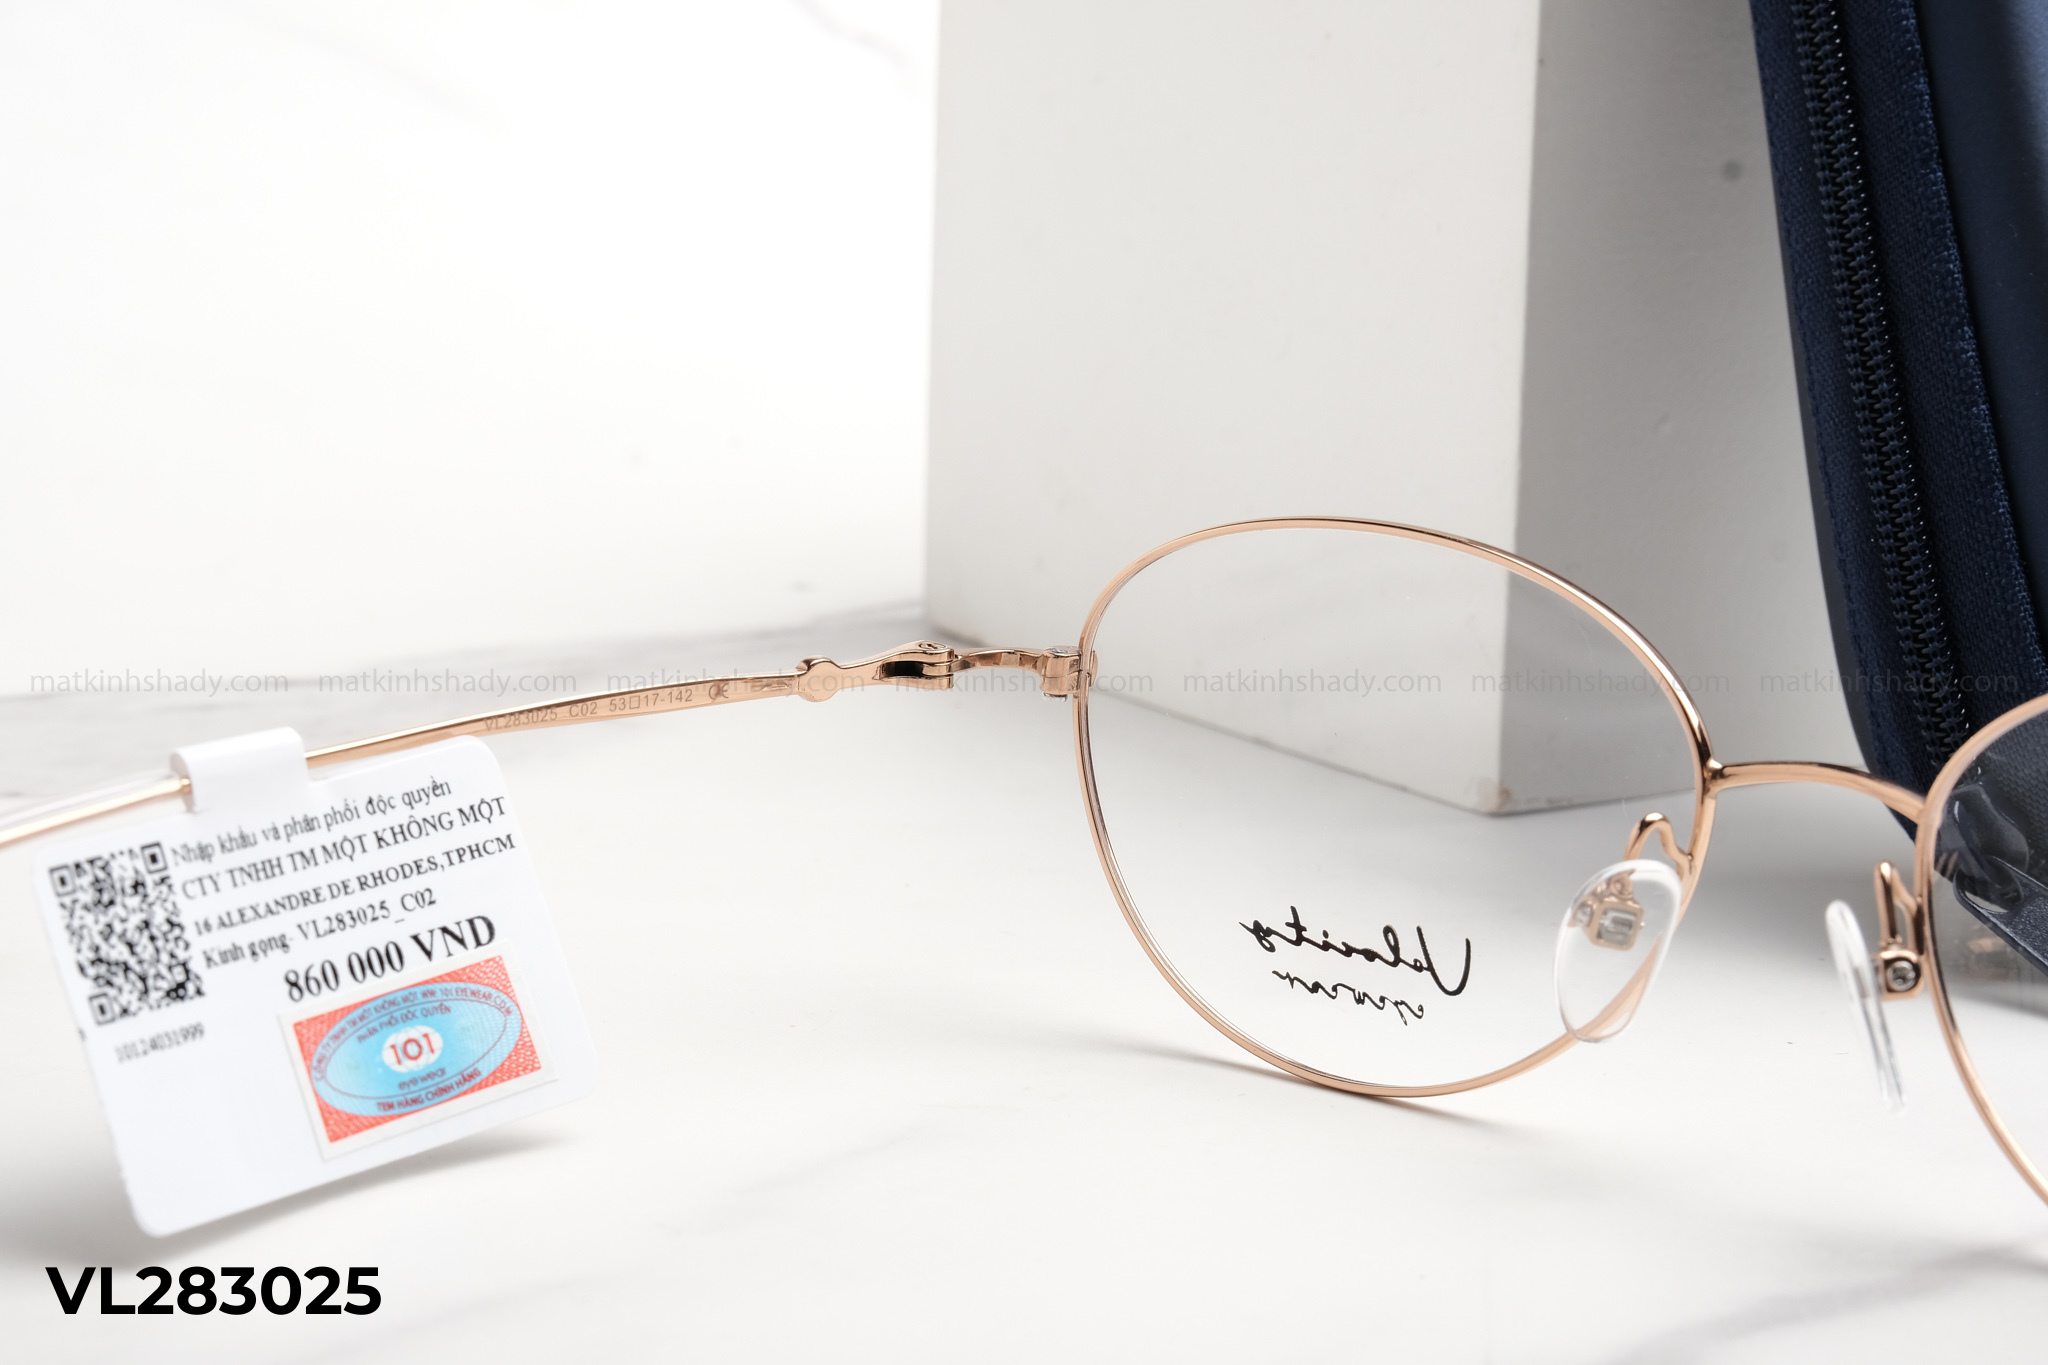  Velocity Eyewear - Glasses -  VL283025 